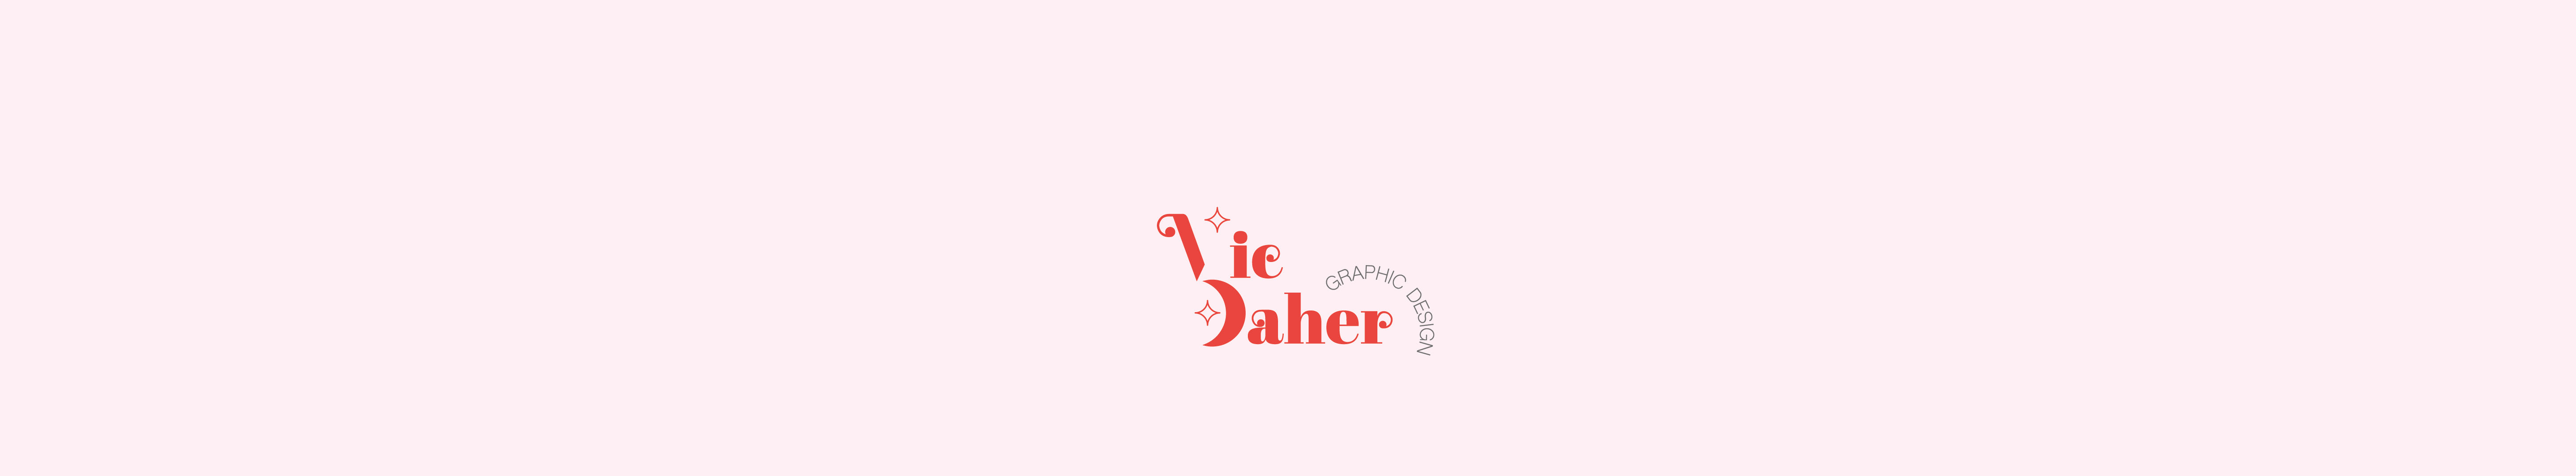 Banner profilu uživatele Victoria Daher